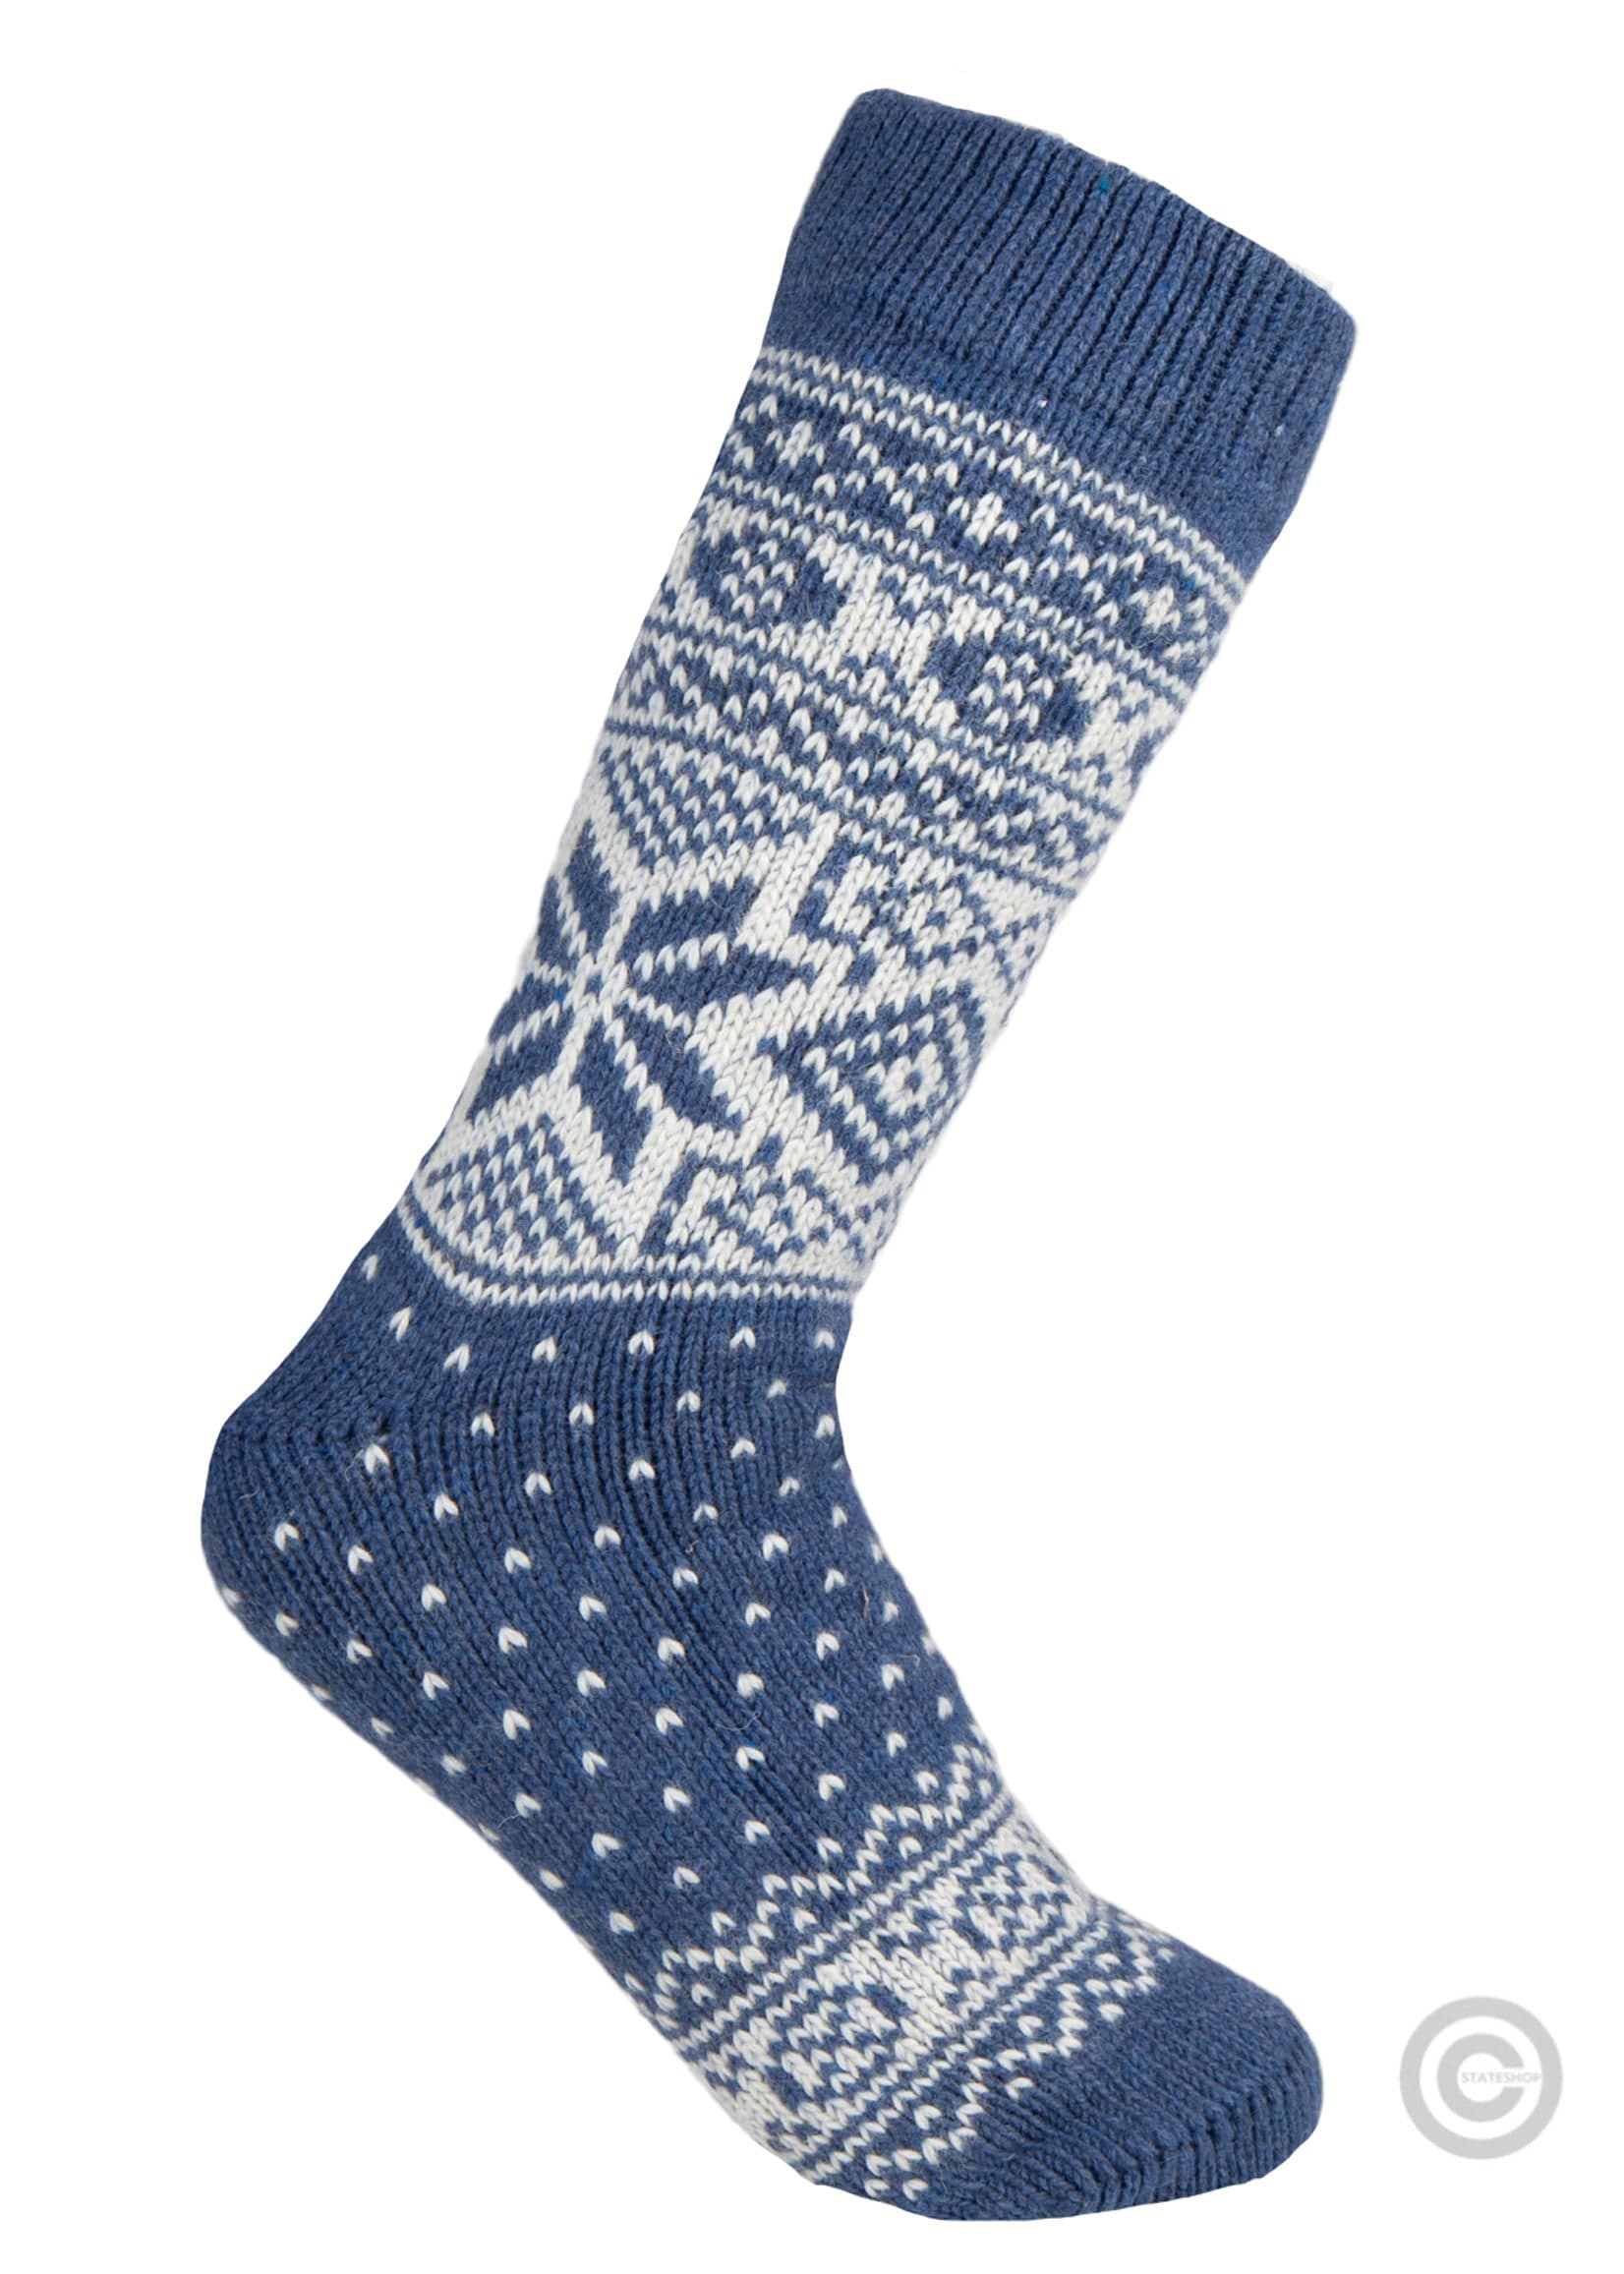 Norfinde Norwegian wool socks "Snowflake" blue